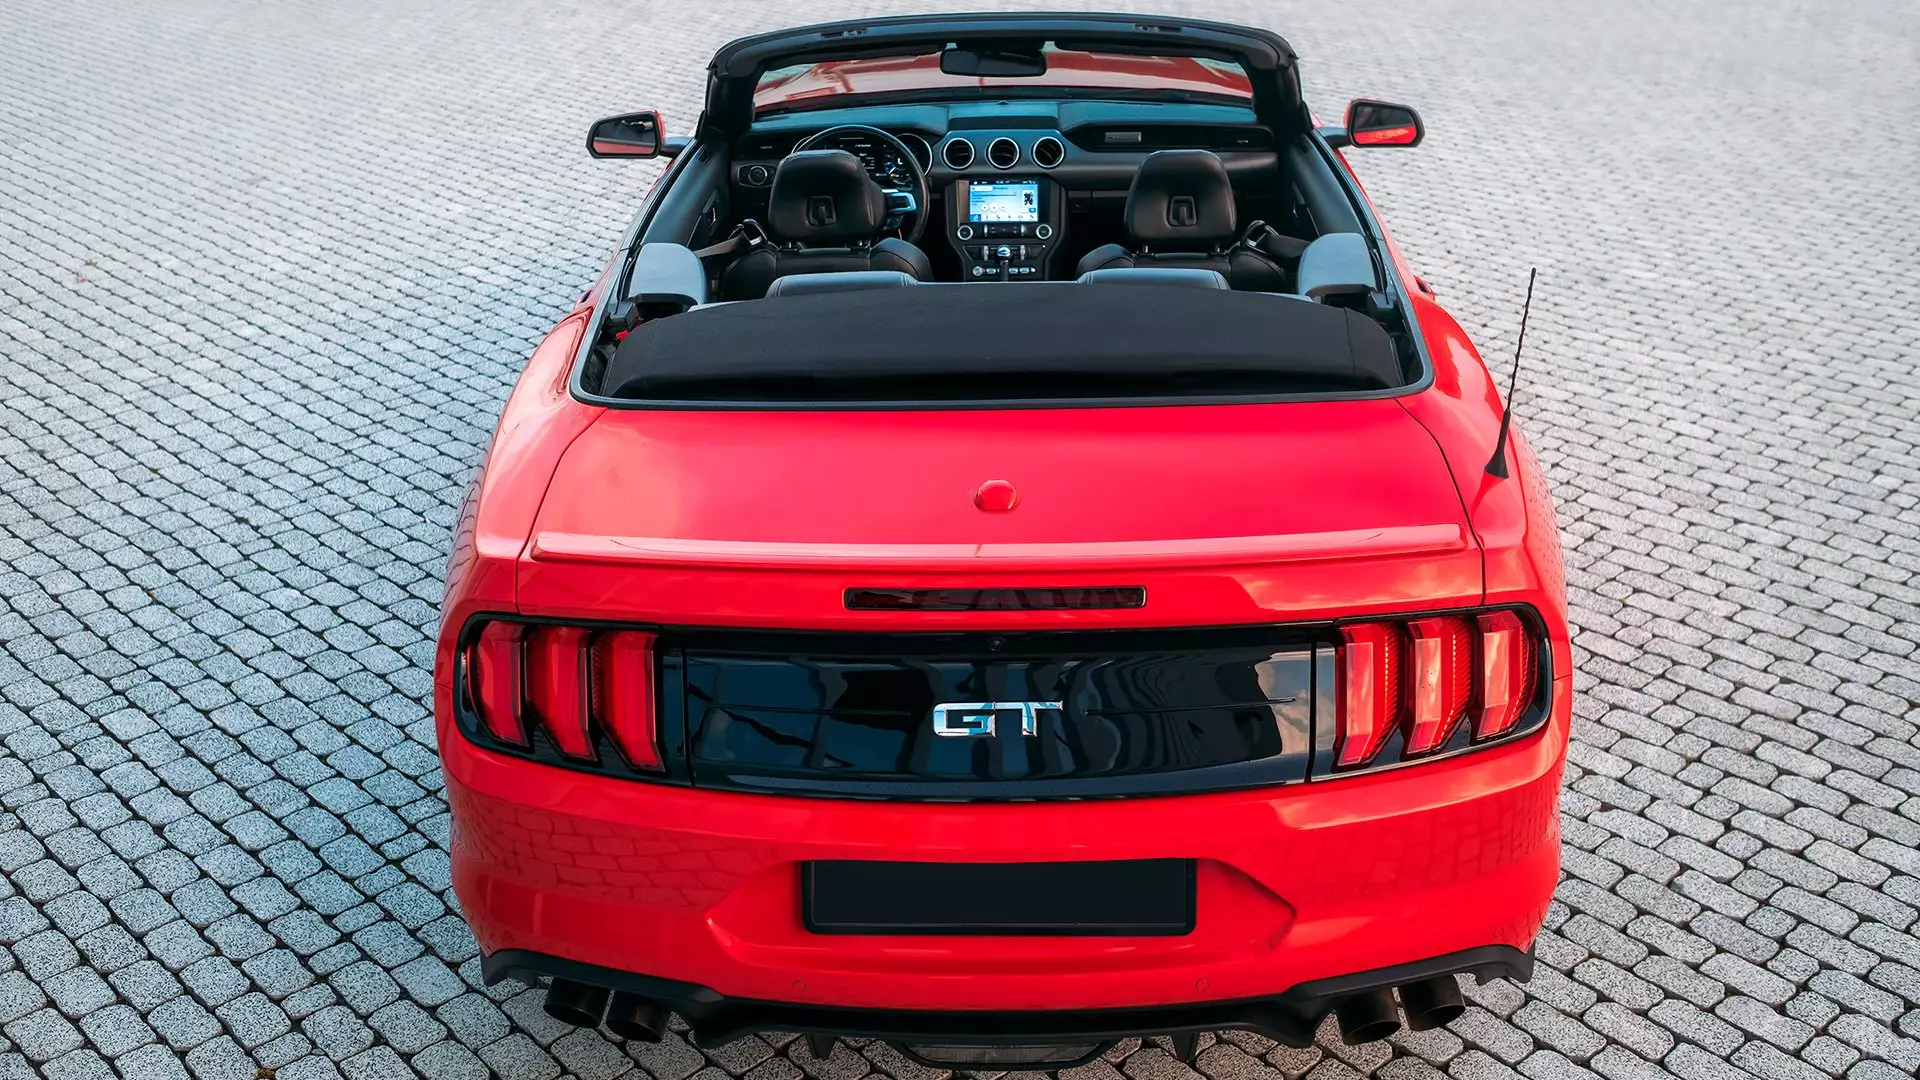 Аренда Ford Mustang GT 5.0  в Москве.